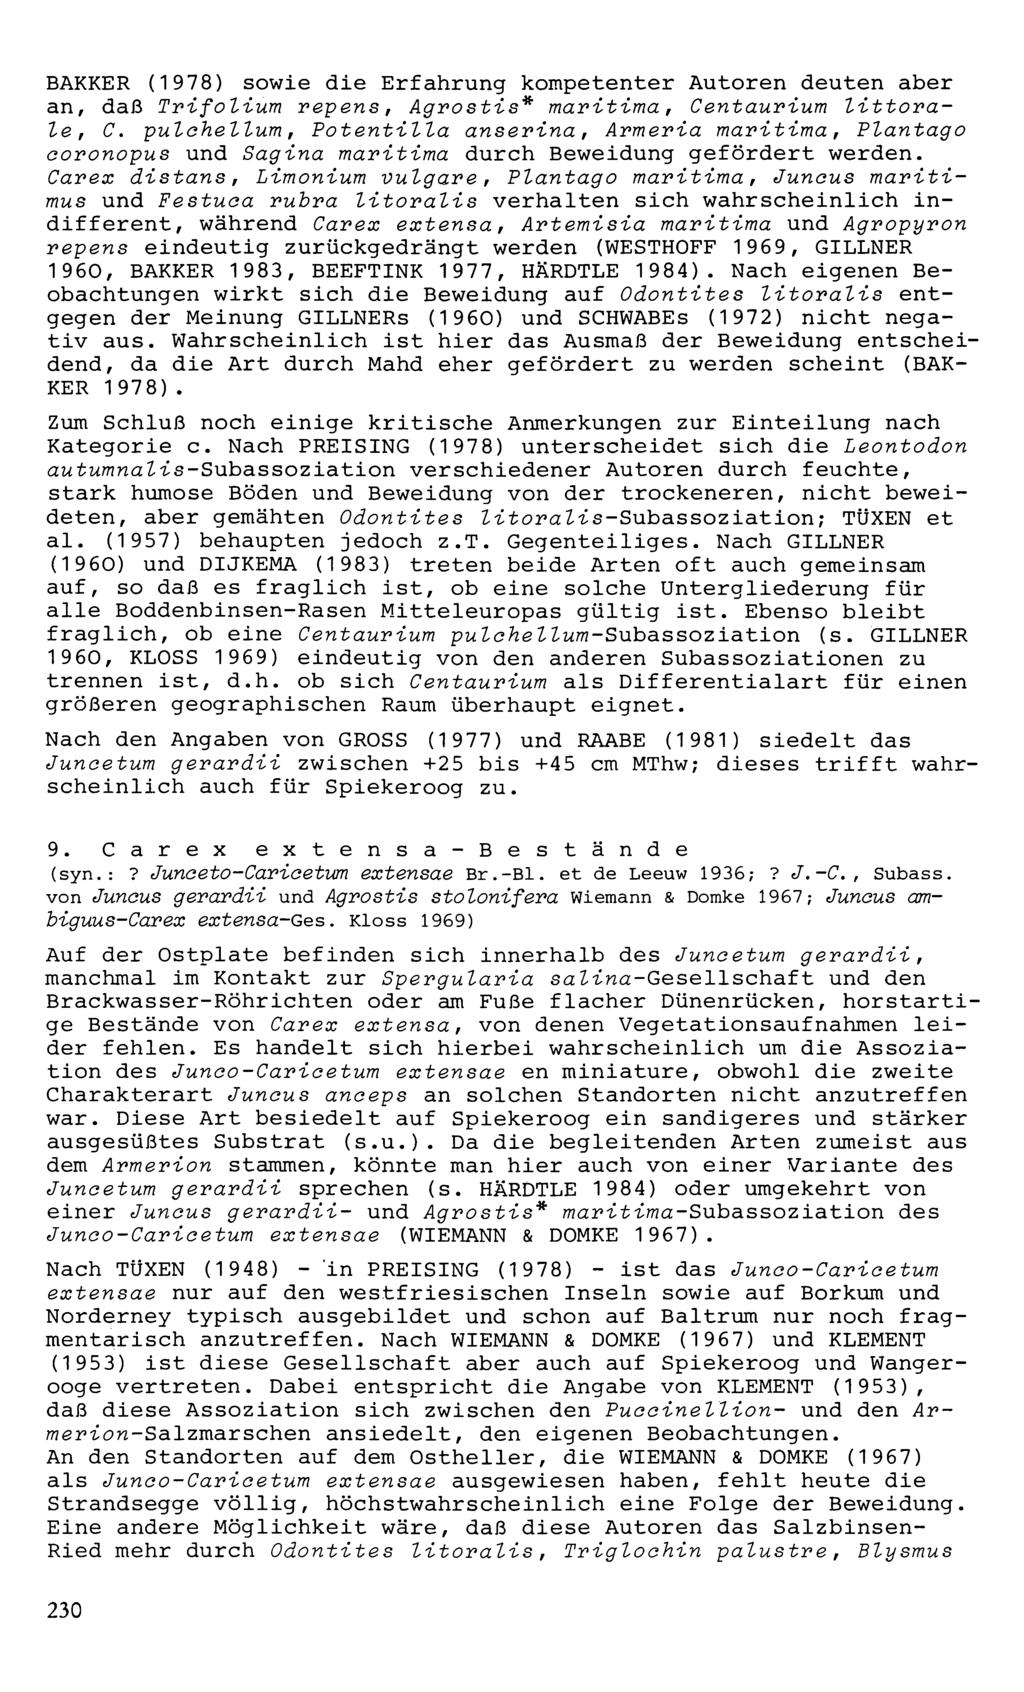 BAKKER (1978) sowie die Erfahrung kompetenter Autoren deuten aber an, daß Trifolium repens, Agrostis* maritima, Centaurium littorale, C.